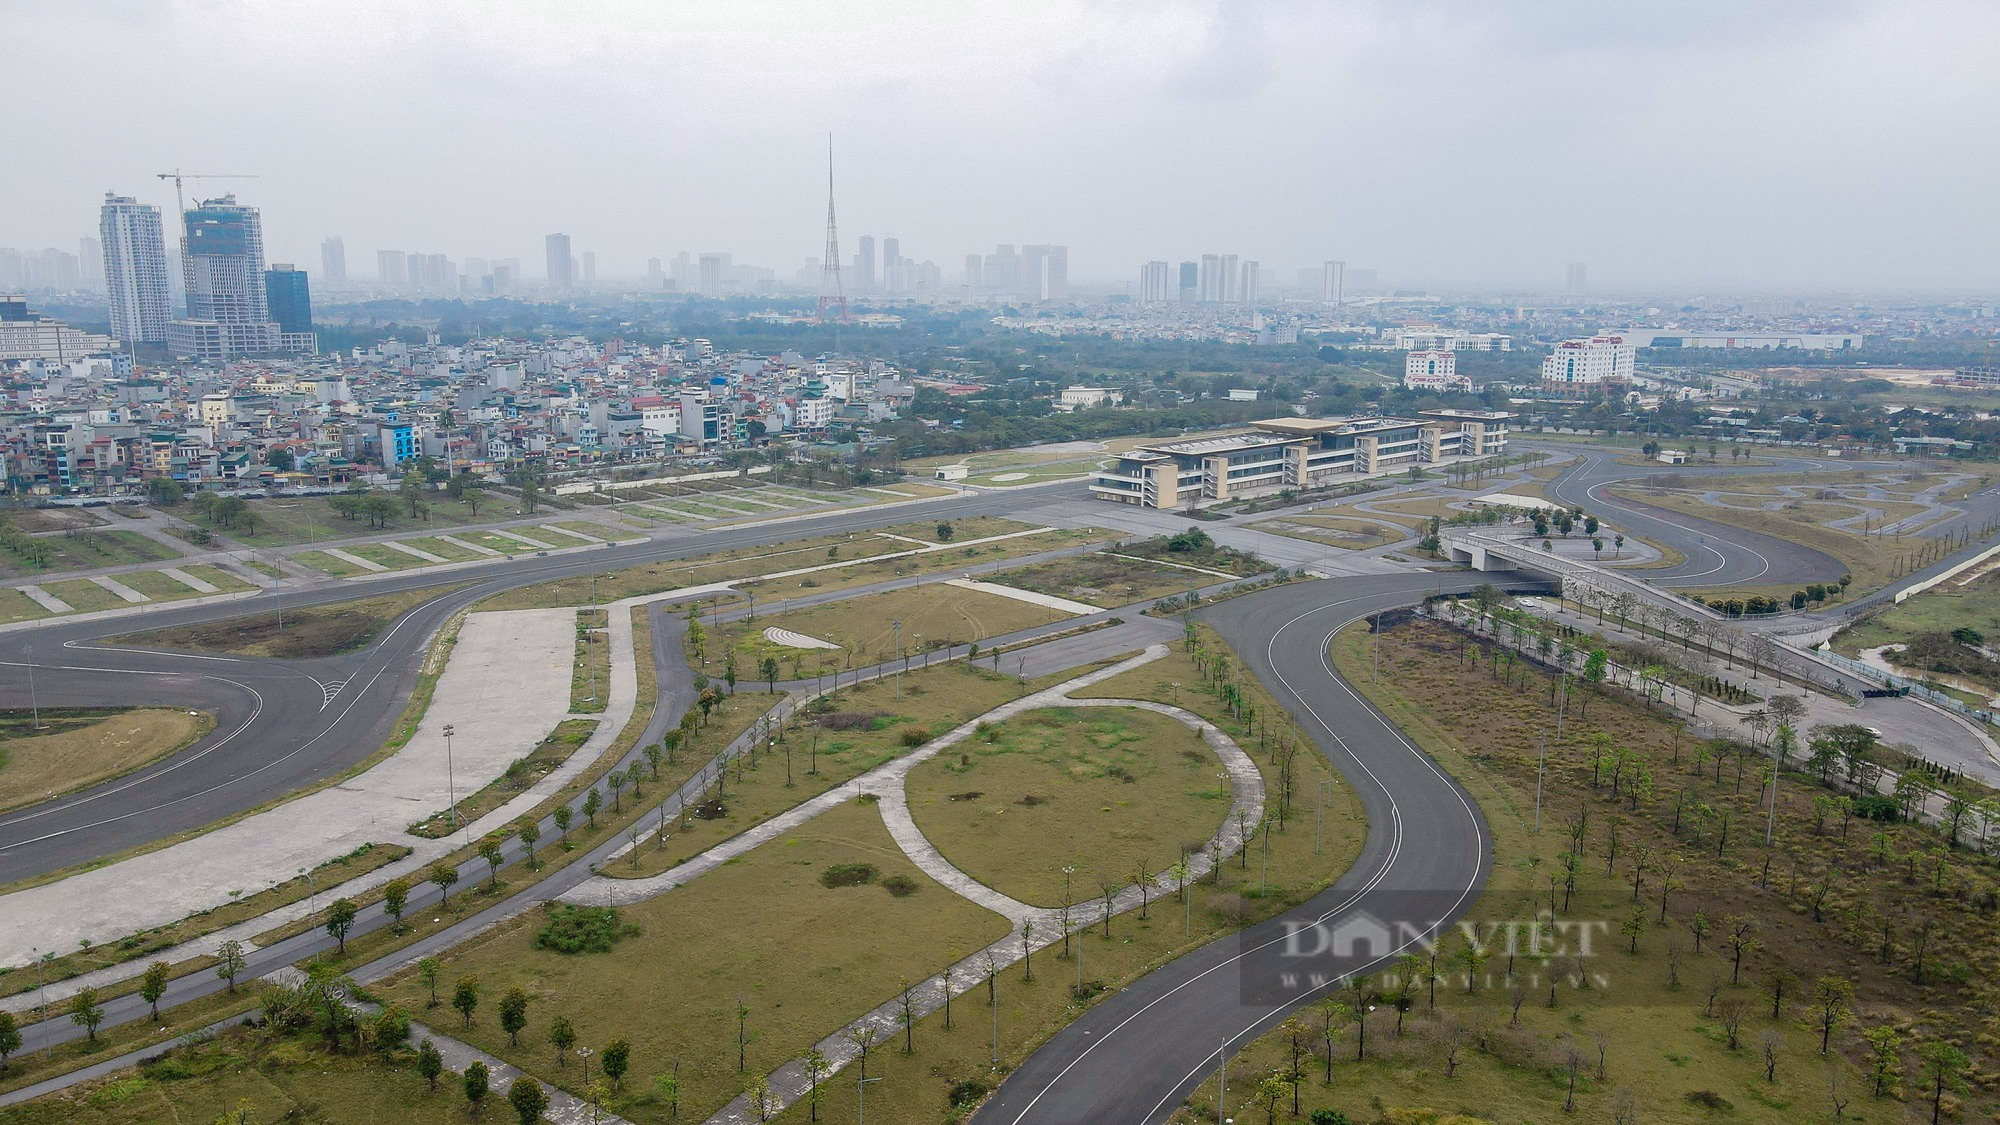 Hiện trạng 300.000 m2 đường đua F1 sau khi Hà Nội chuyển đổi mục đích khai thác, sử dụng - Ảnh 1.